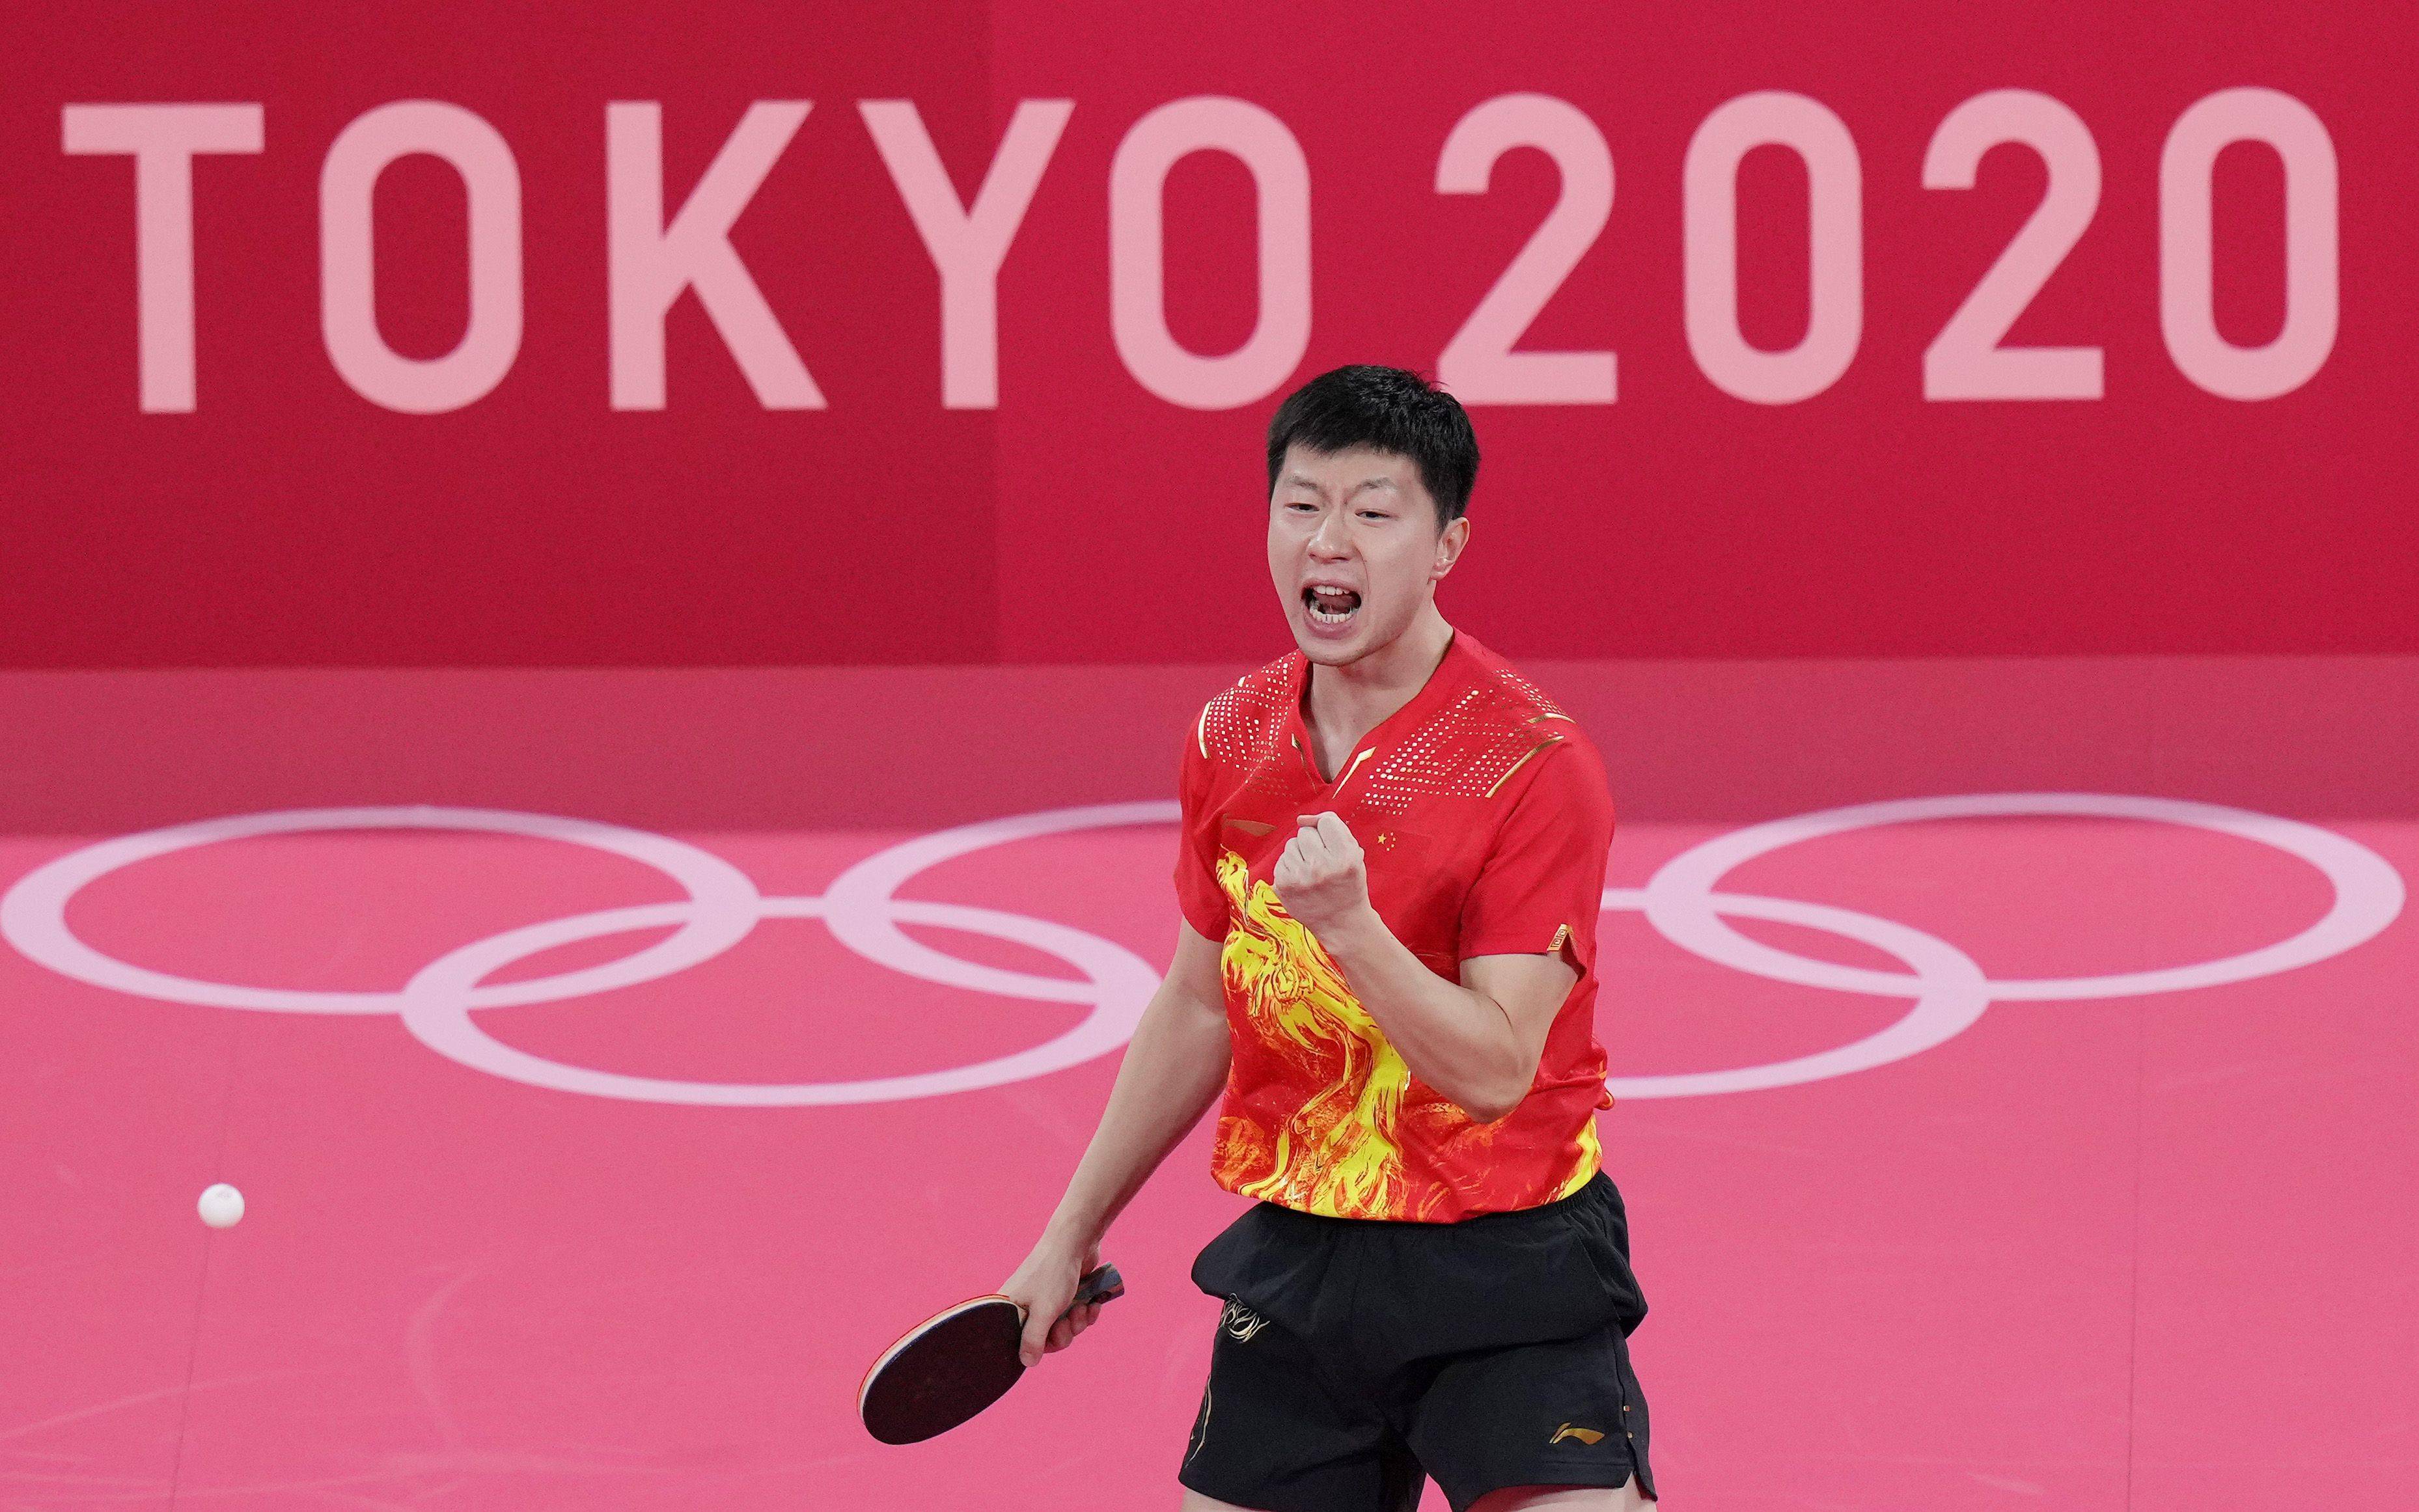 第19金!马龙成奥运史上首位乒乓球男单卫冕冠军